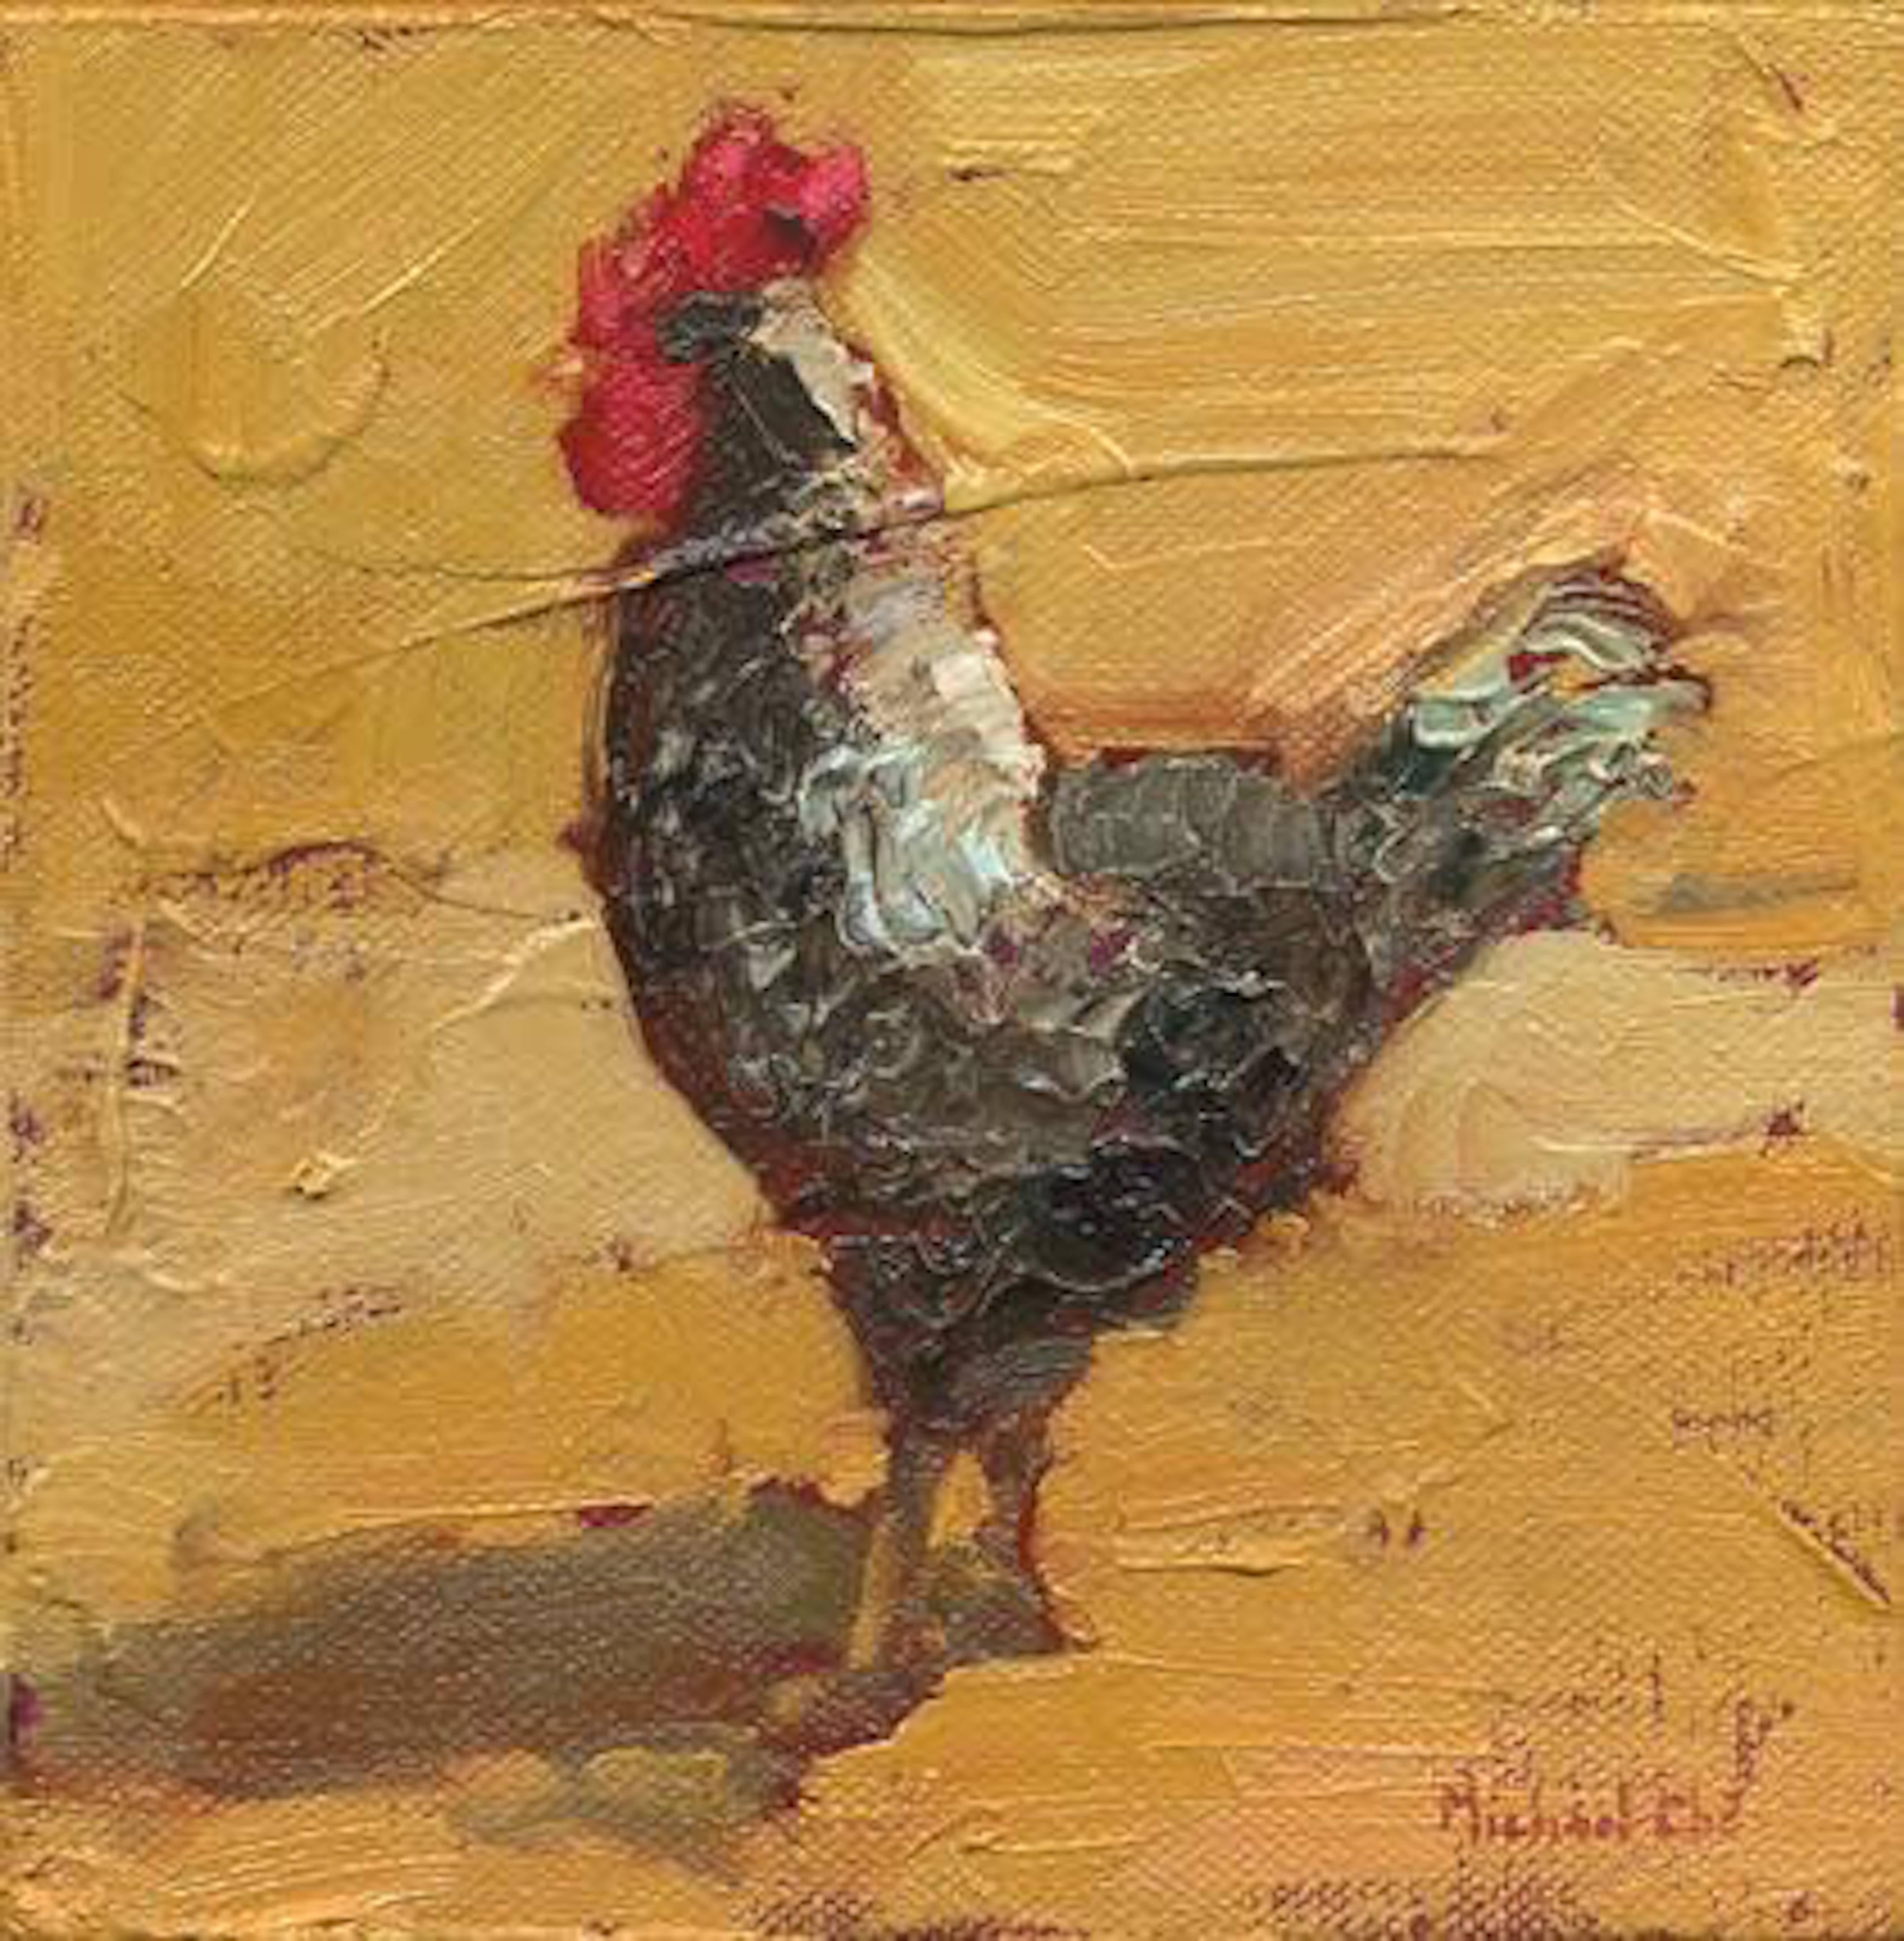 Michael-Che Swisher Animal Painting - Brassy